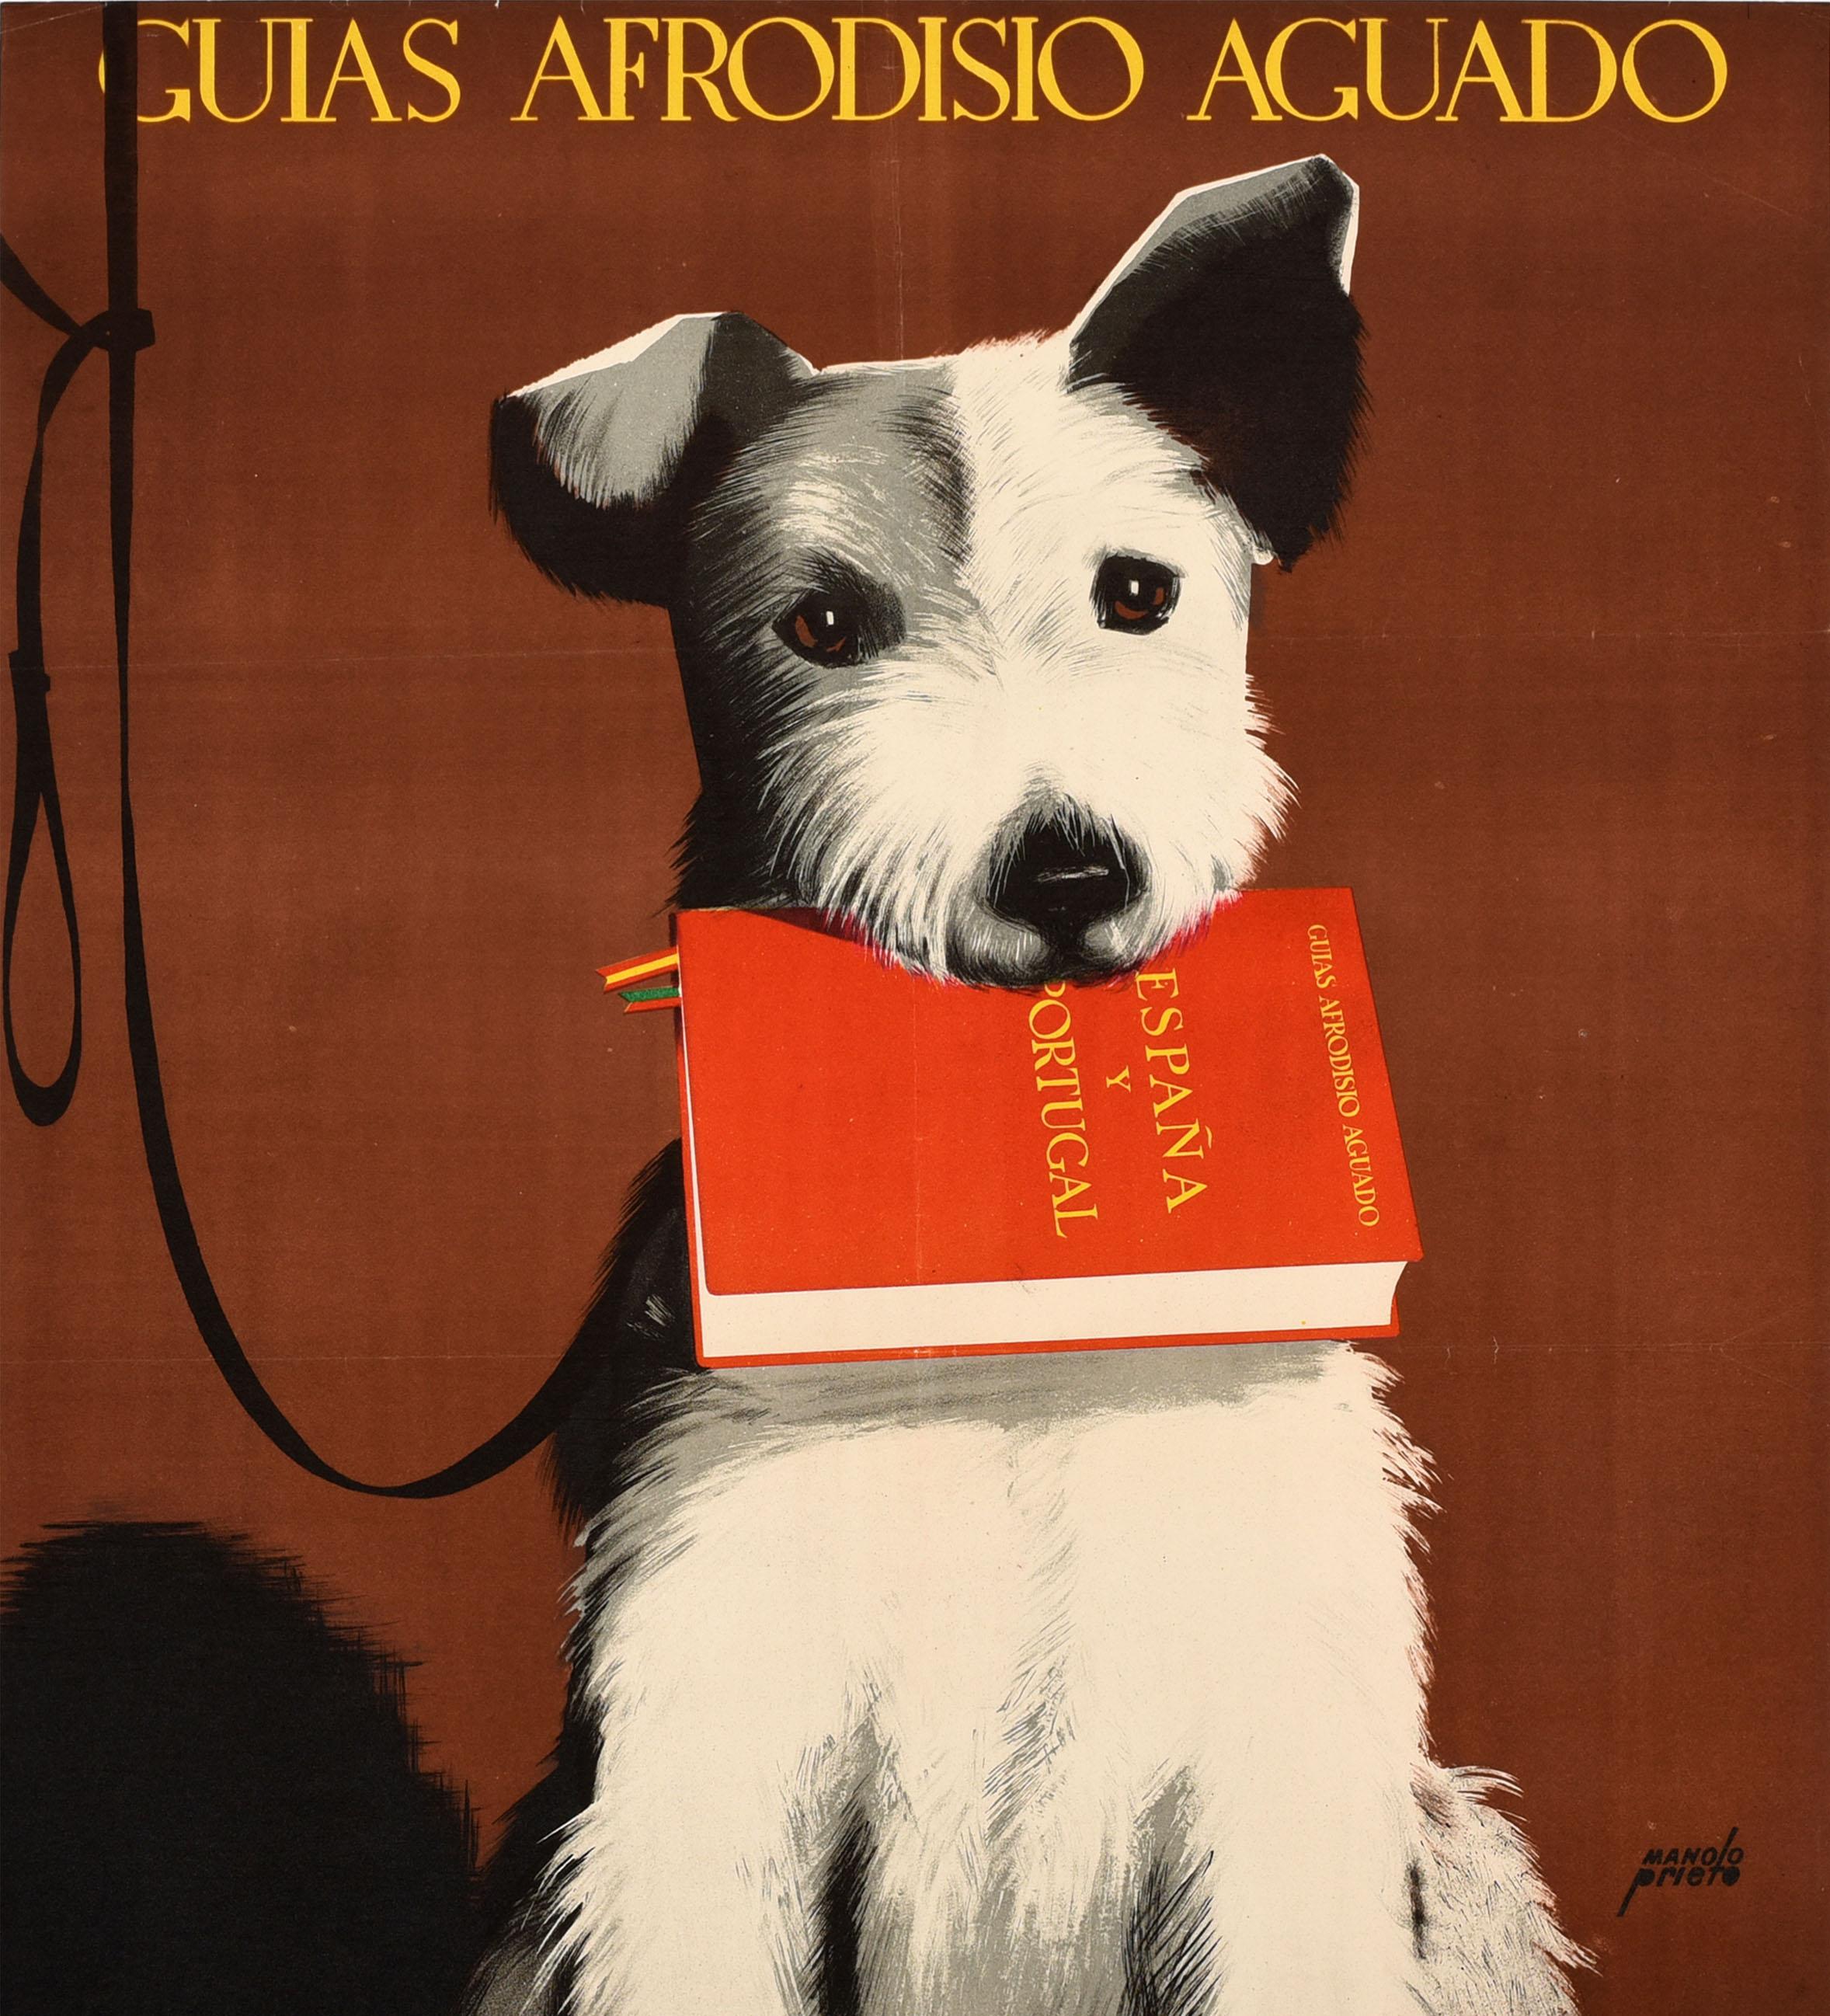 Affiche publicitaire originale - Guias Afrodisio Aguado Espana y Portugal / Spain and Portugal Guide Books - réalisée par Manolo Prieto (1912-1991) représentant un chien terrier noir et blanc en laisse tenant le livre rouge dans sa gueule sur un